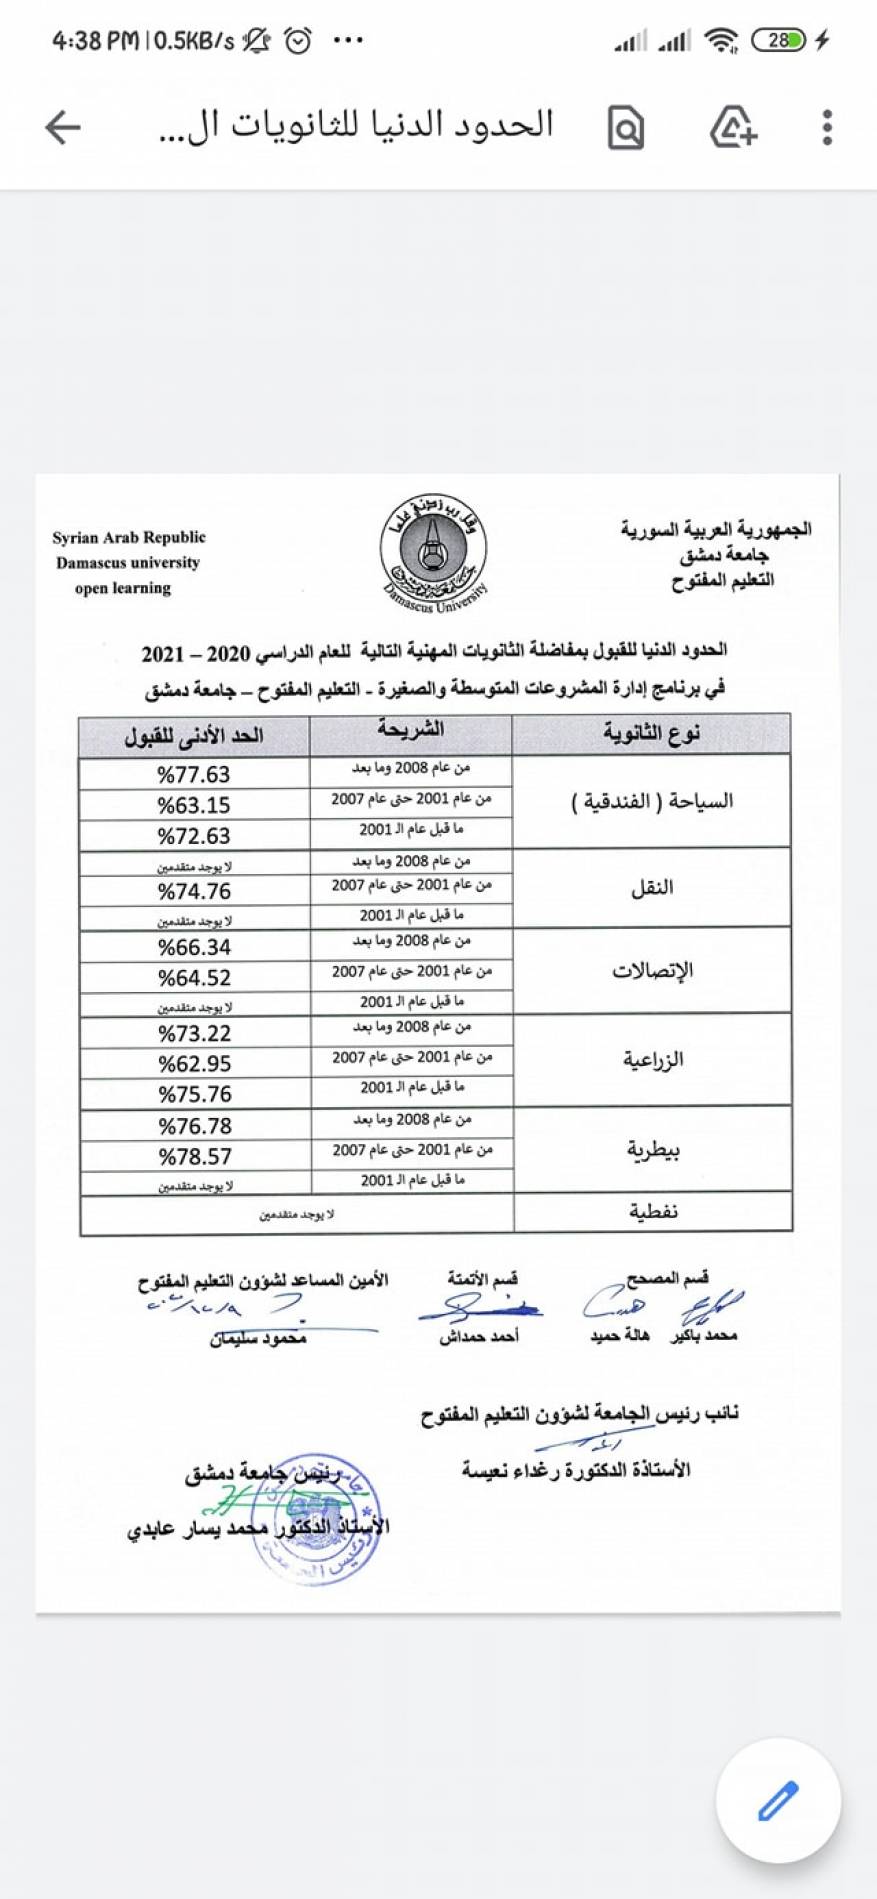 نتائج مفاضلة التعليم المفتوح جامعة دمشق 2020 - 2021 (3)